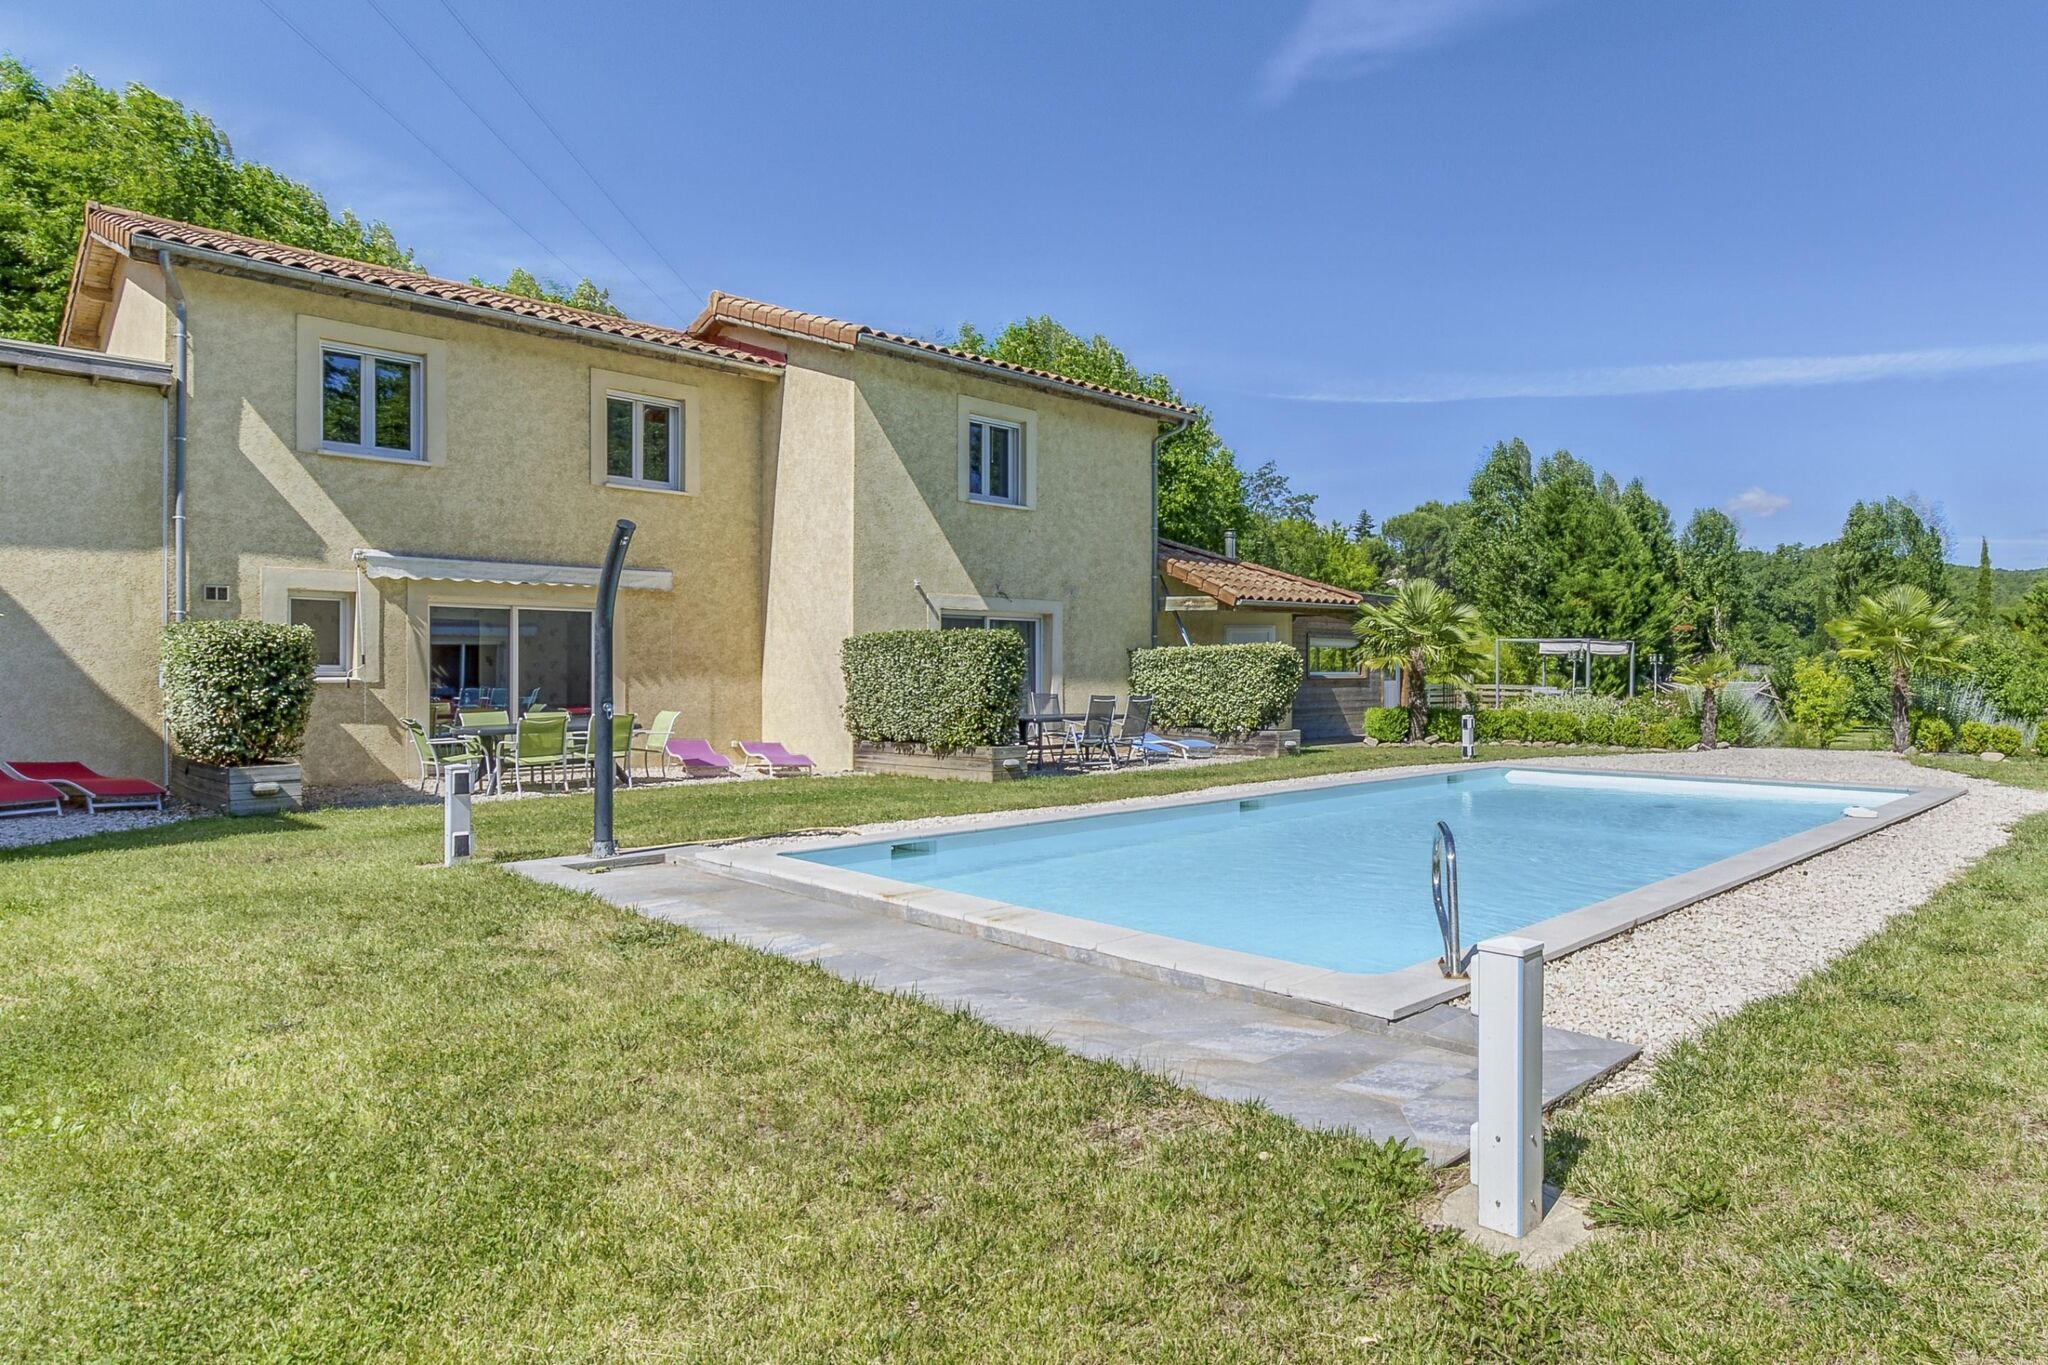 Fijn vakantiehuis in Gagnières met een zwembad